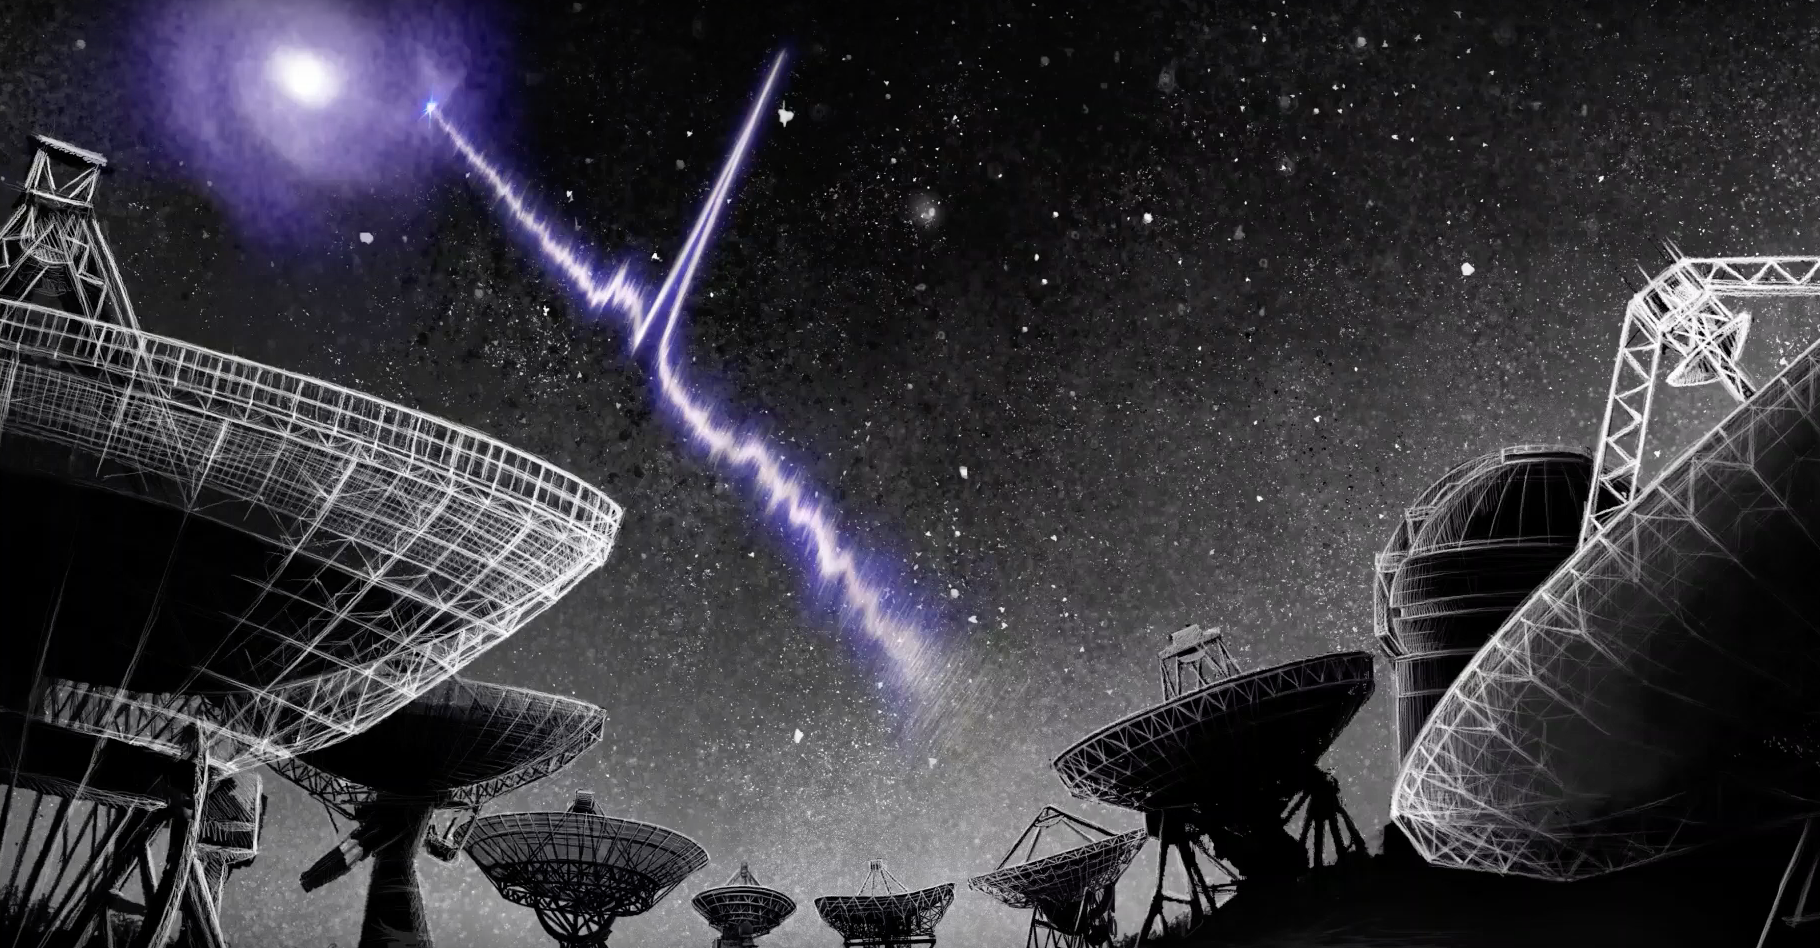 Une vue d’artiste d’un sursaut radio rapide localisé dans une galaxie spirale. © Danielle Futselaar, artsource.nl, Institut néerlandais de radioastronomie